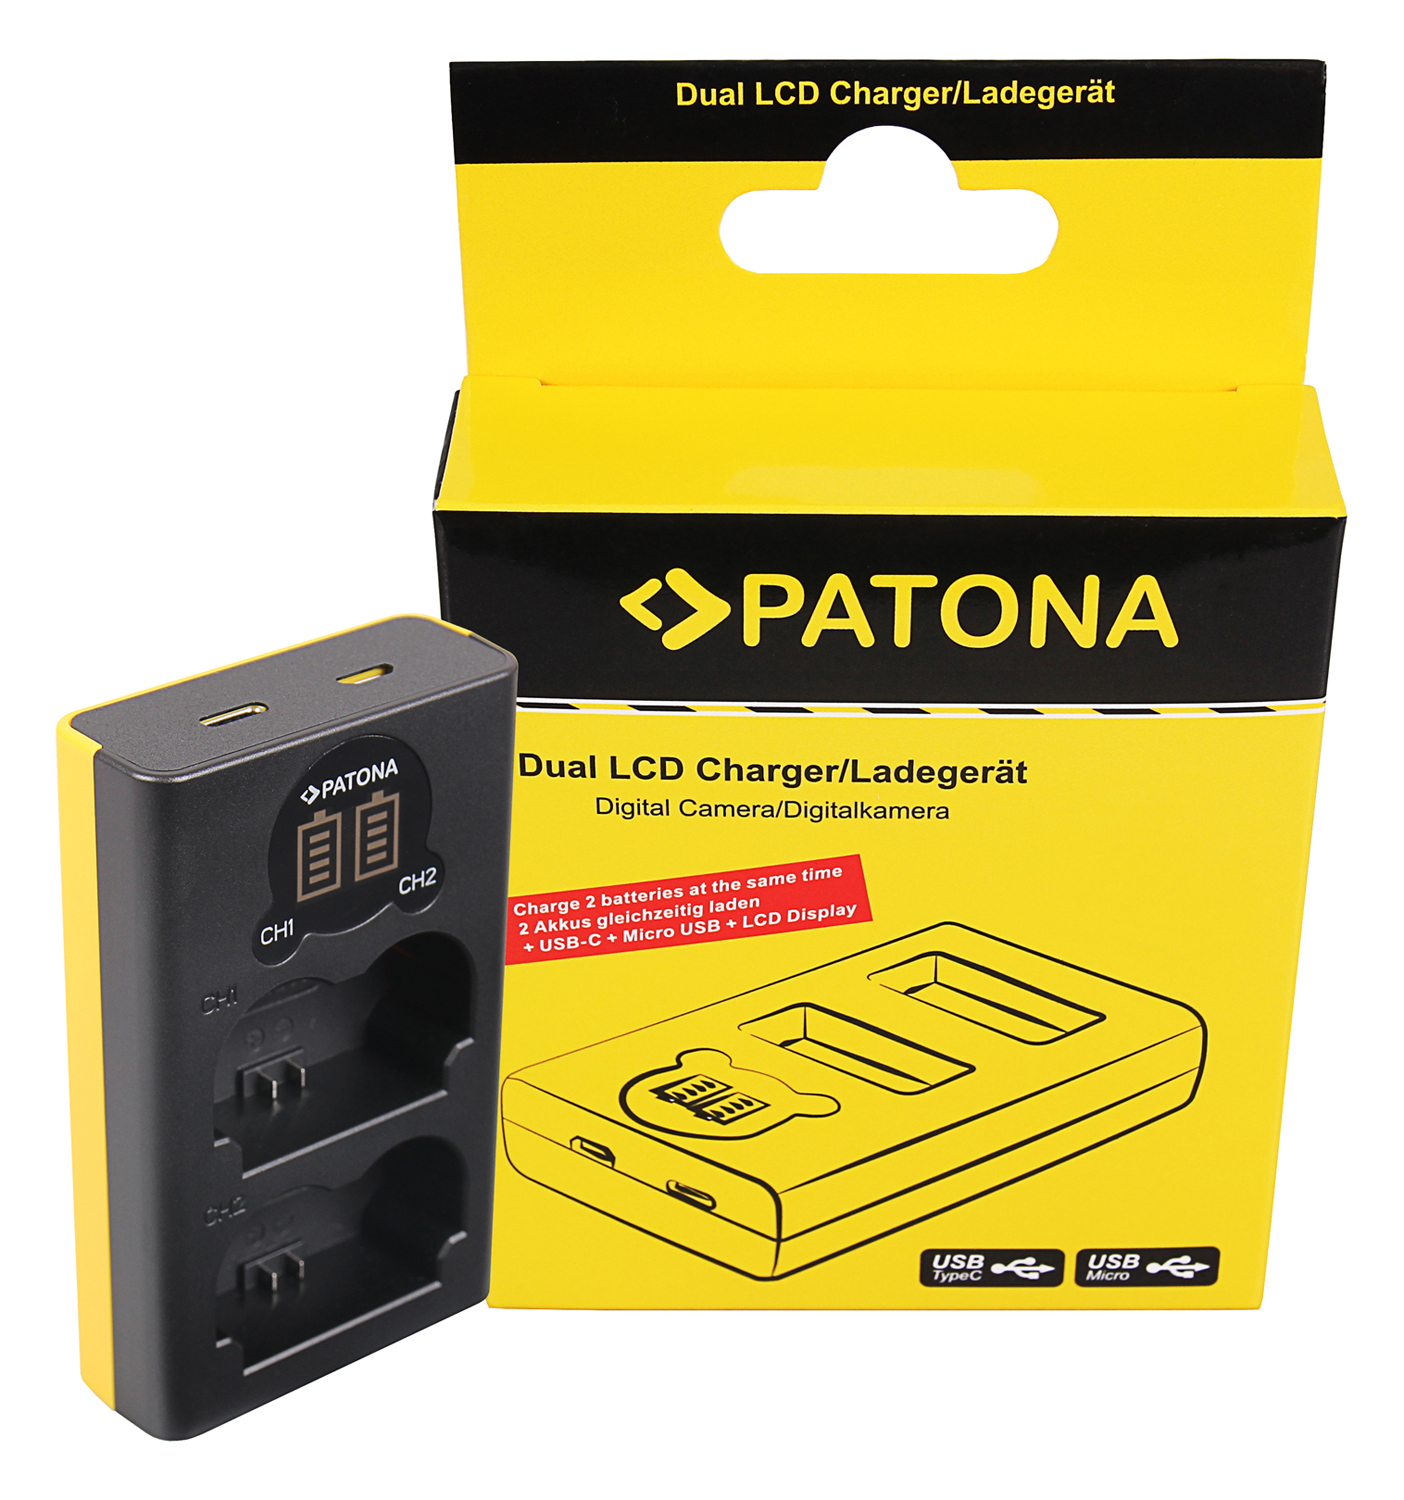 2 Akku für Fuji NP-W126s Patona Platinum 1x Dual USB Ladegerät Charger LCD 